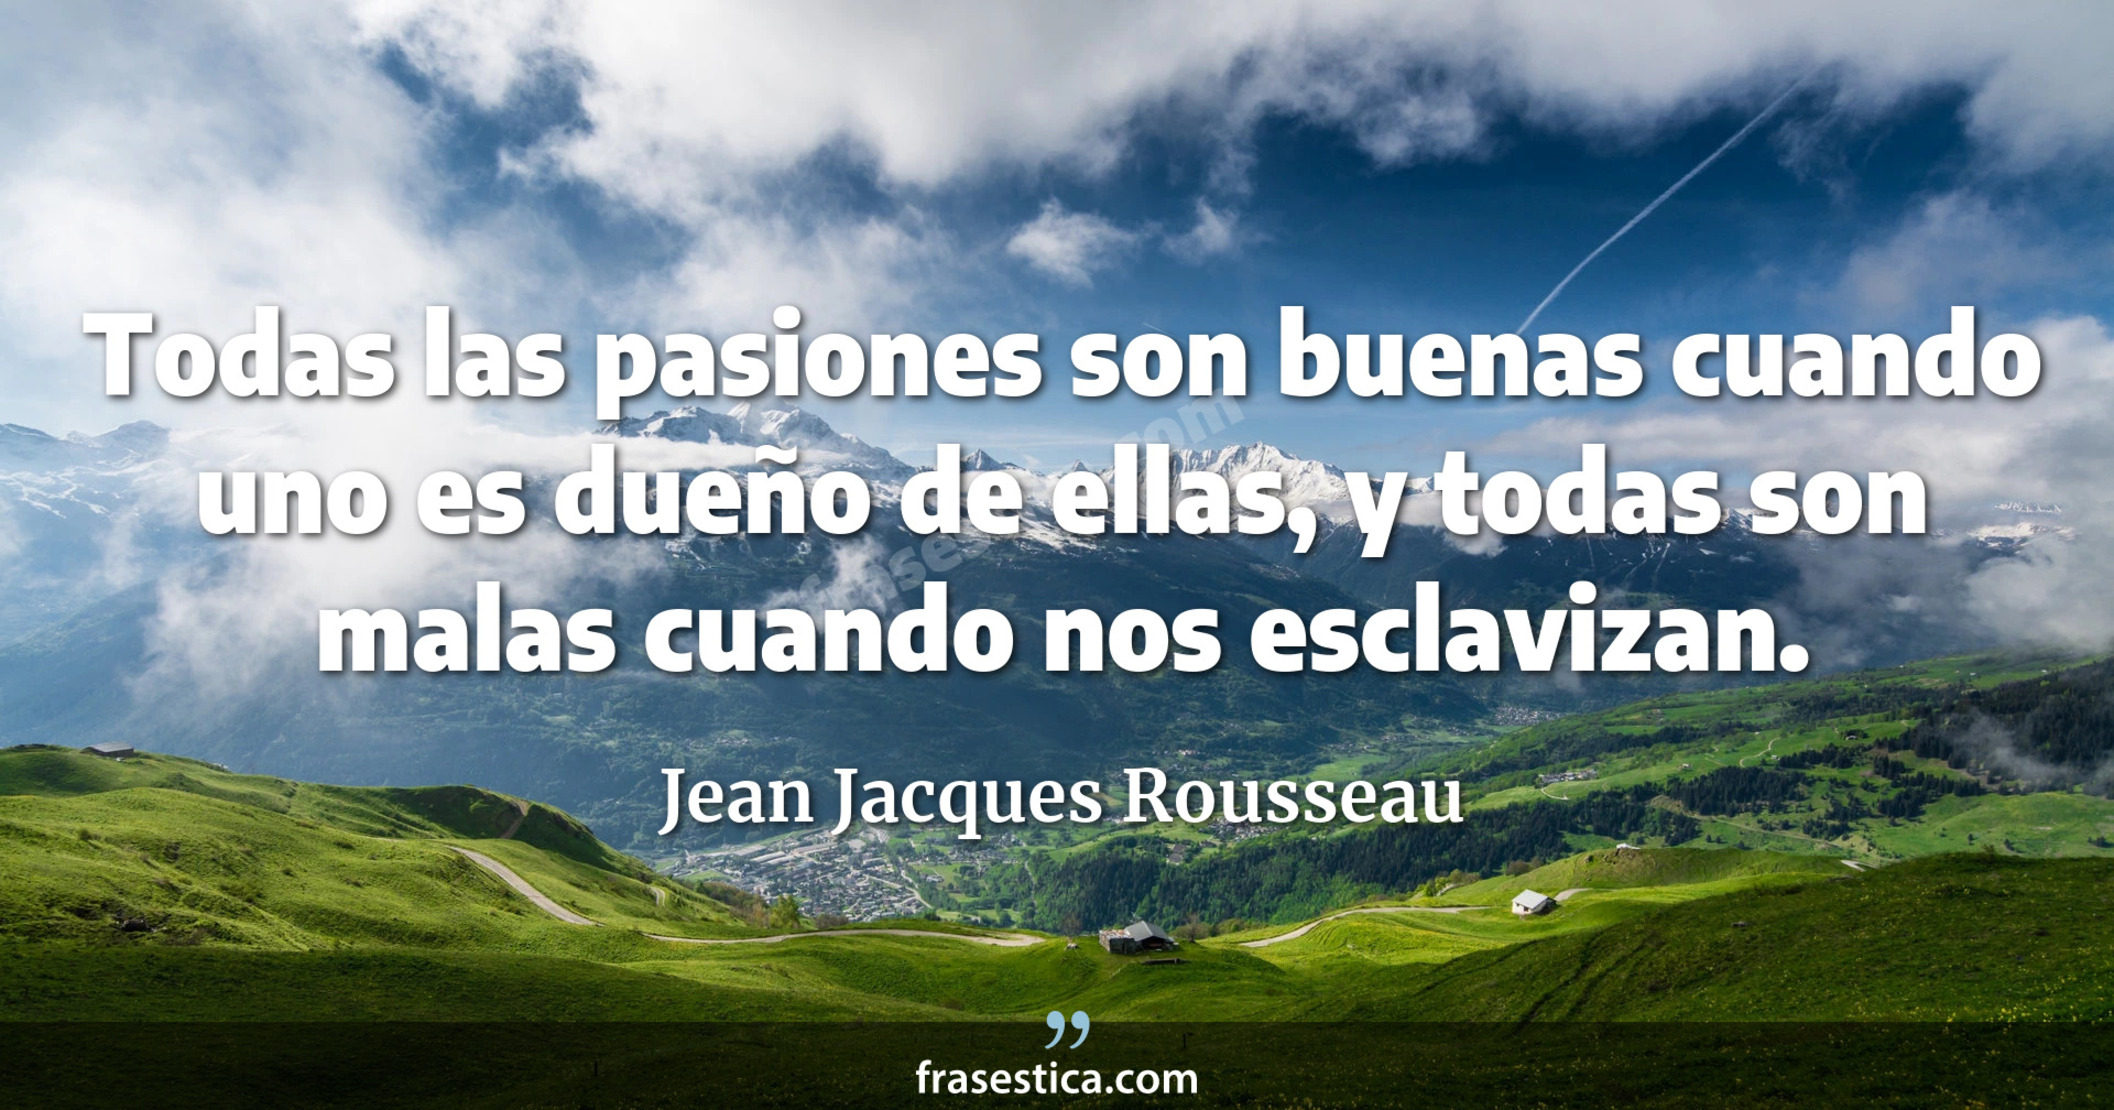 Todas las pasiones son buenas cuando uno es dueño de ellas, y todas son malas cuando nos esclavizan. - Jean Jacques Rousseau